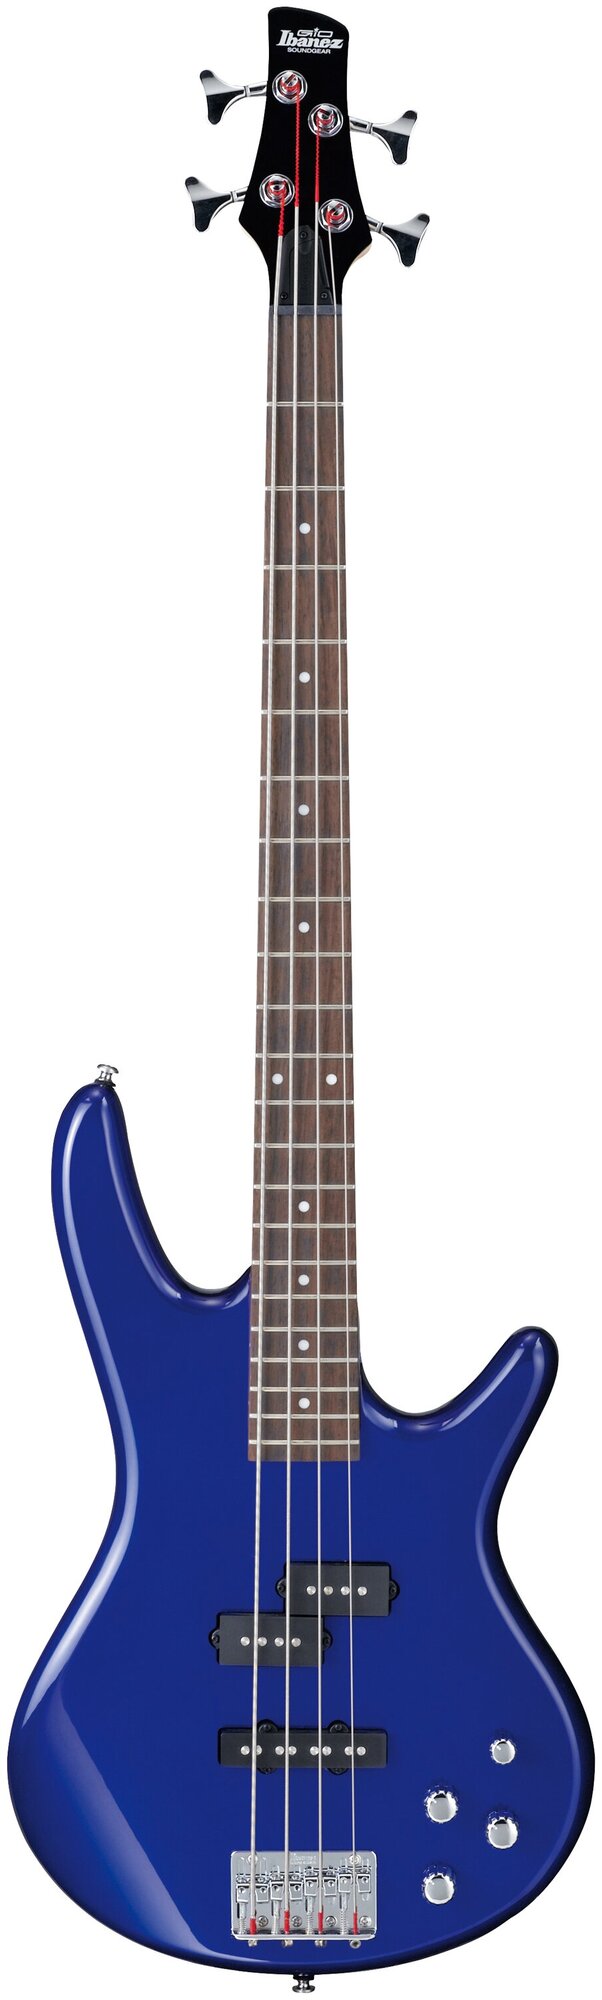 IBANEZ GSR200-JB бас-гитара, 4 струны, корпус тополь, гриф клён, цвет синий